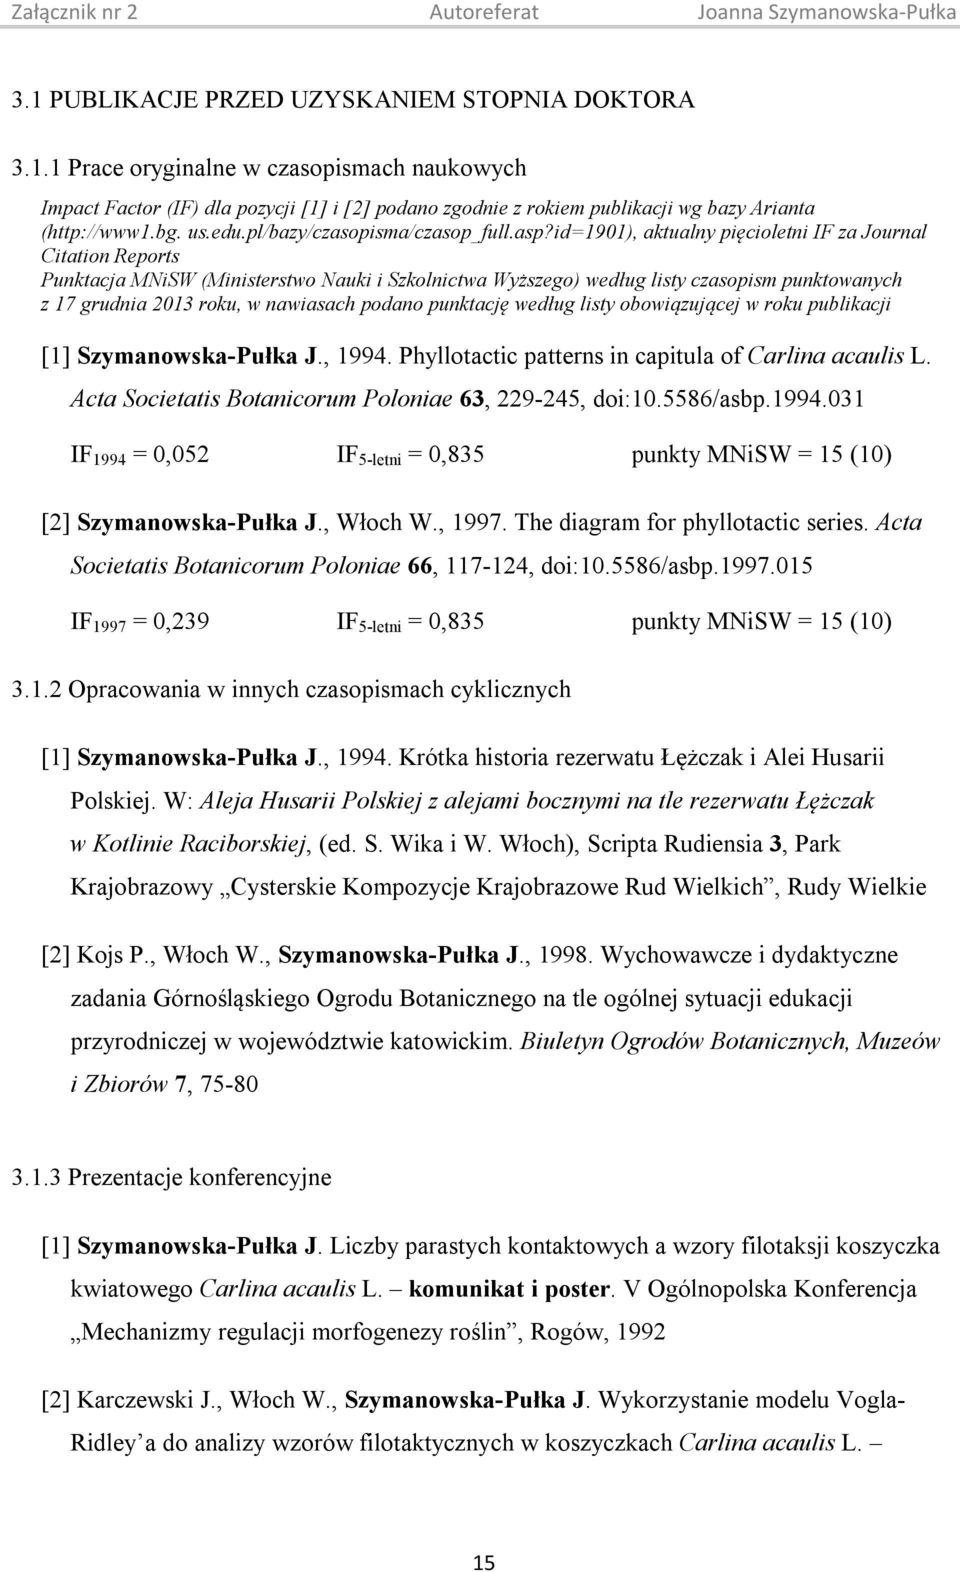 id=1901), aktualny pięcioletni IF za Journal Citation Reports Punktacja MNiSW (Ministerstwo Nauki i Szkolnictwa Wyższego) według listy czasopism punktowanych z 17 grudnia 2013 roku, w nawiasach